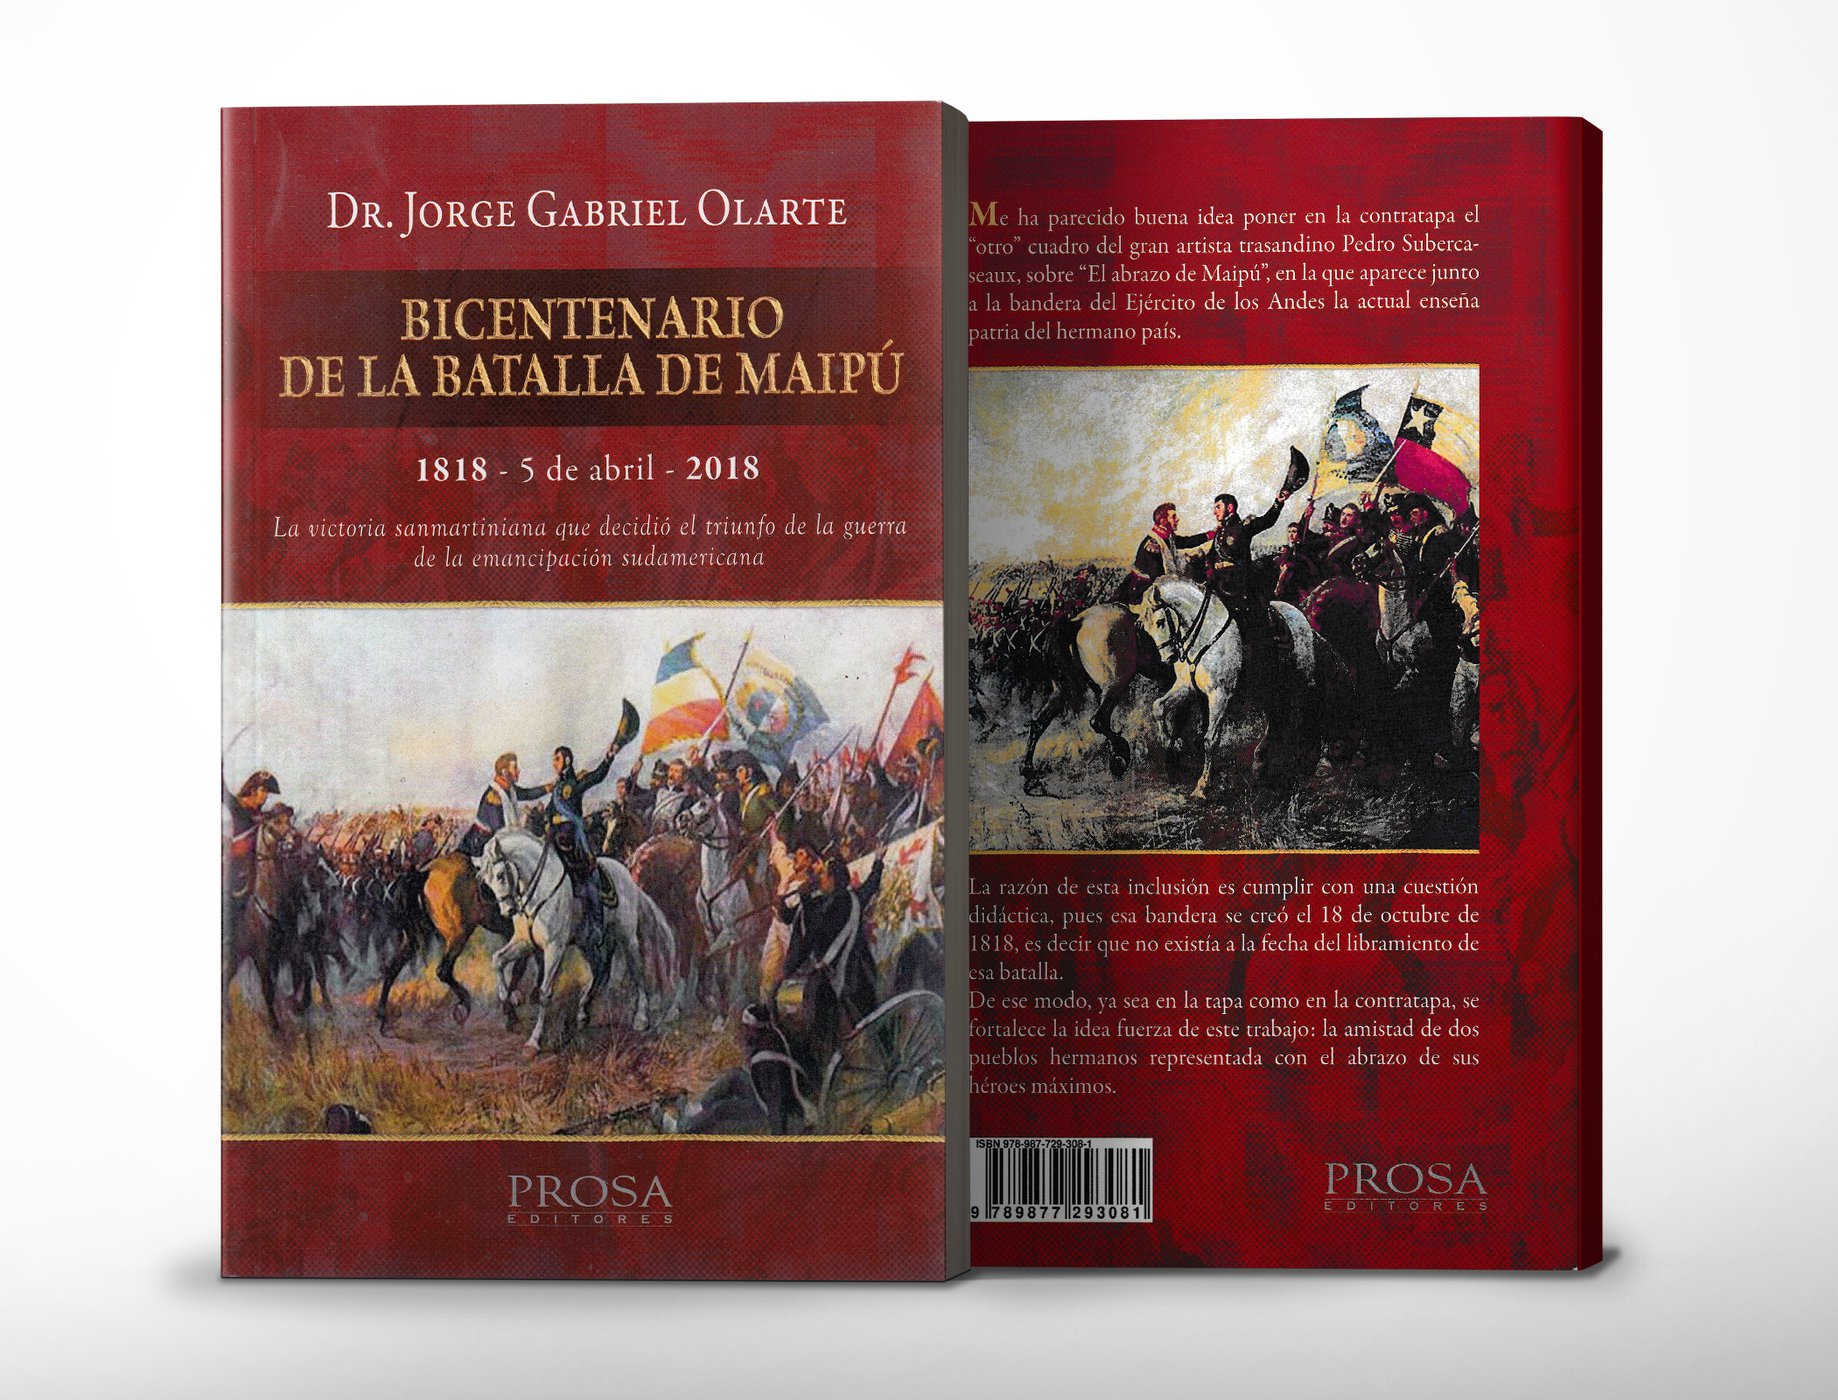 Bicentenario de la Batalla de Maipú. La victoria sanmartiniana que decidió el triunfo de la guerra de emancipación sudamericana